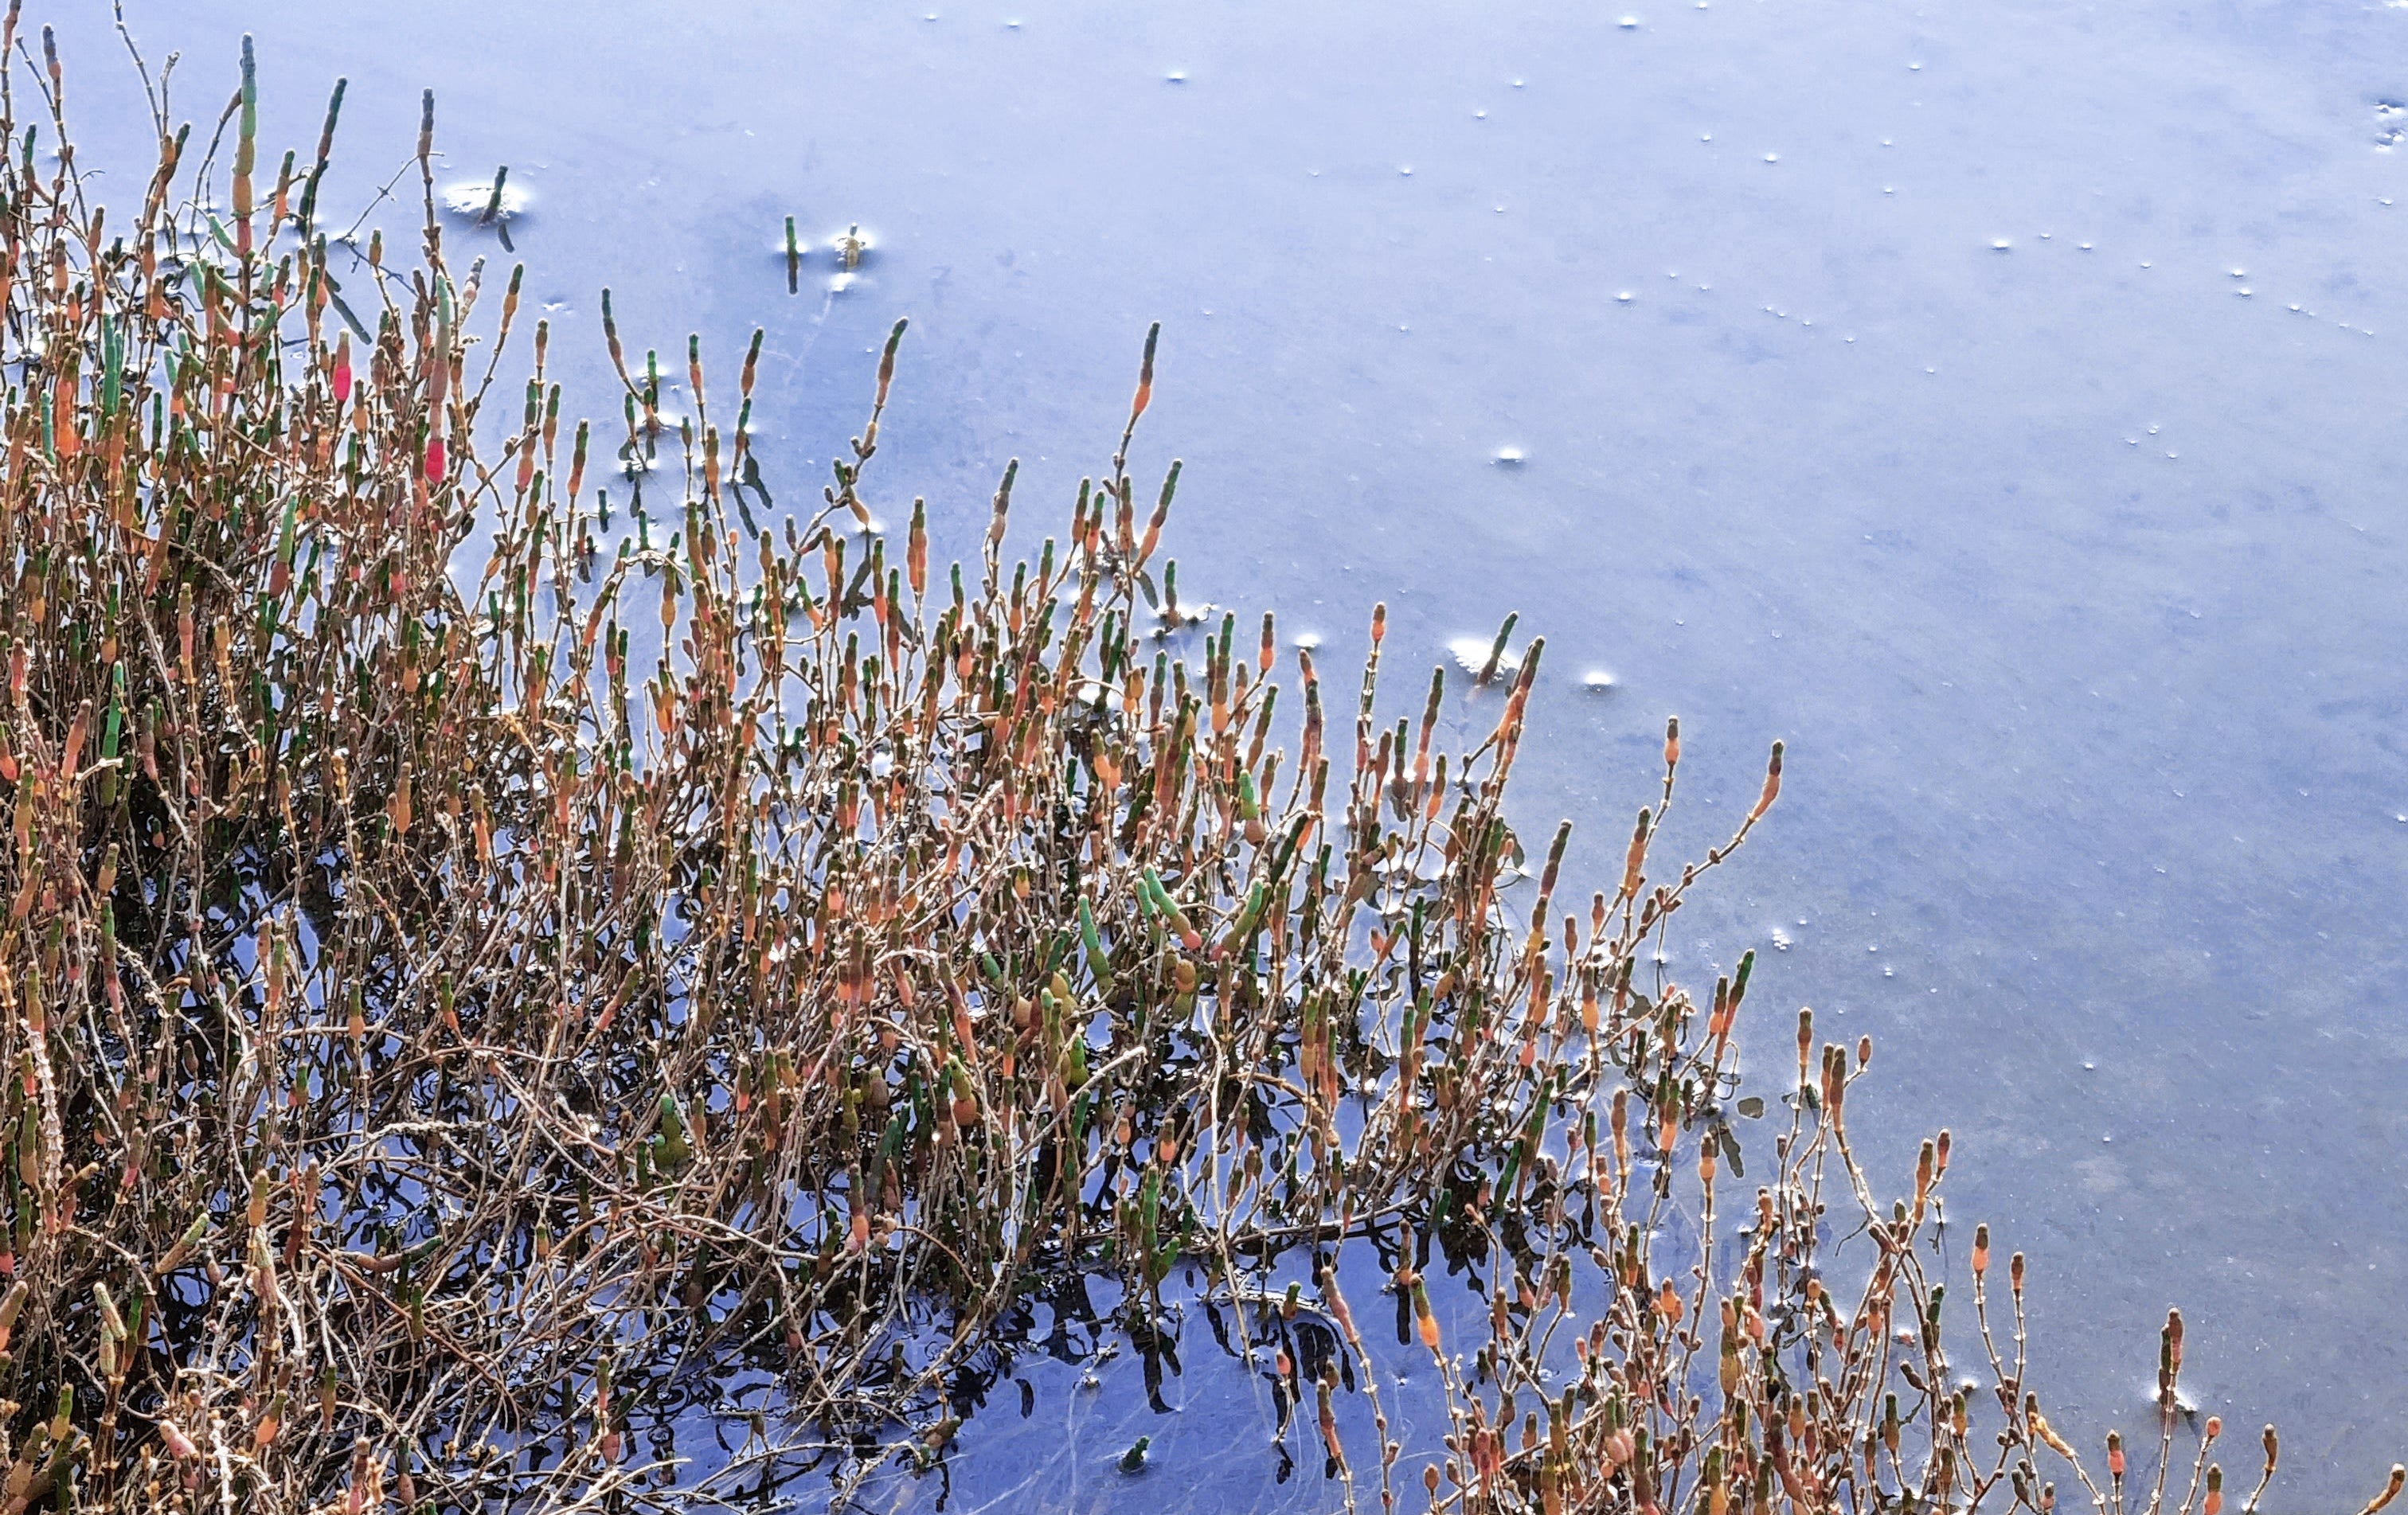 Salicornia medio sumergida por el agua del mar.